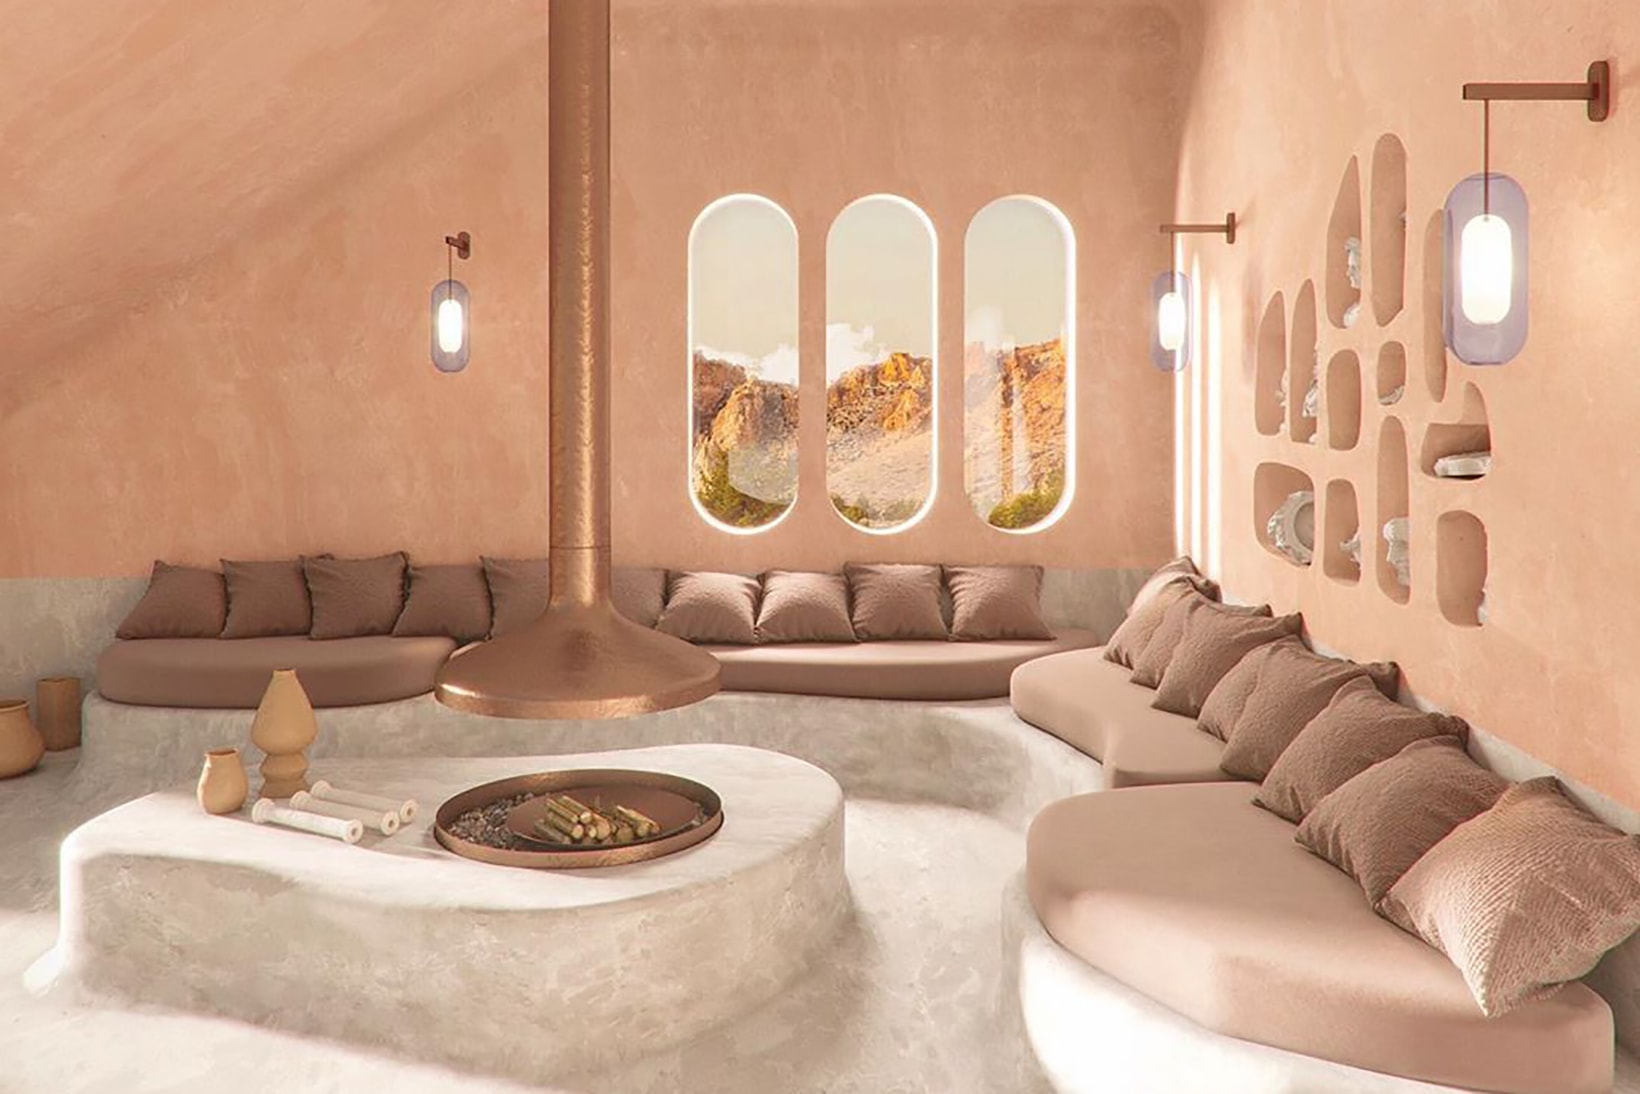 best modern home interior design inspiration pink living room sofa pillow window lights fireplace